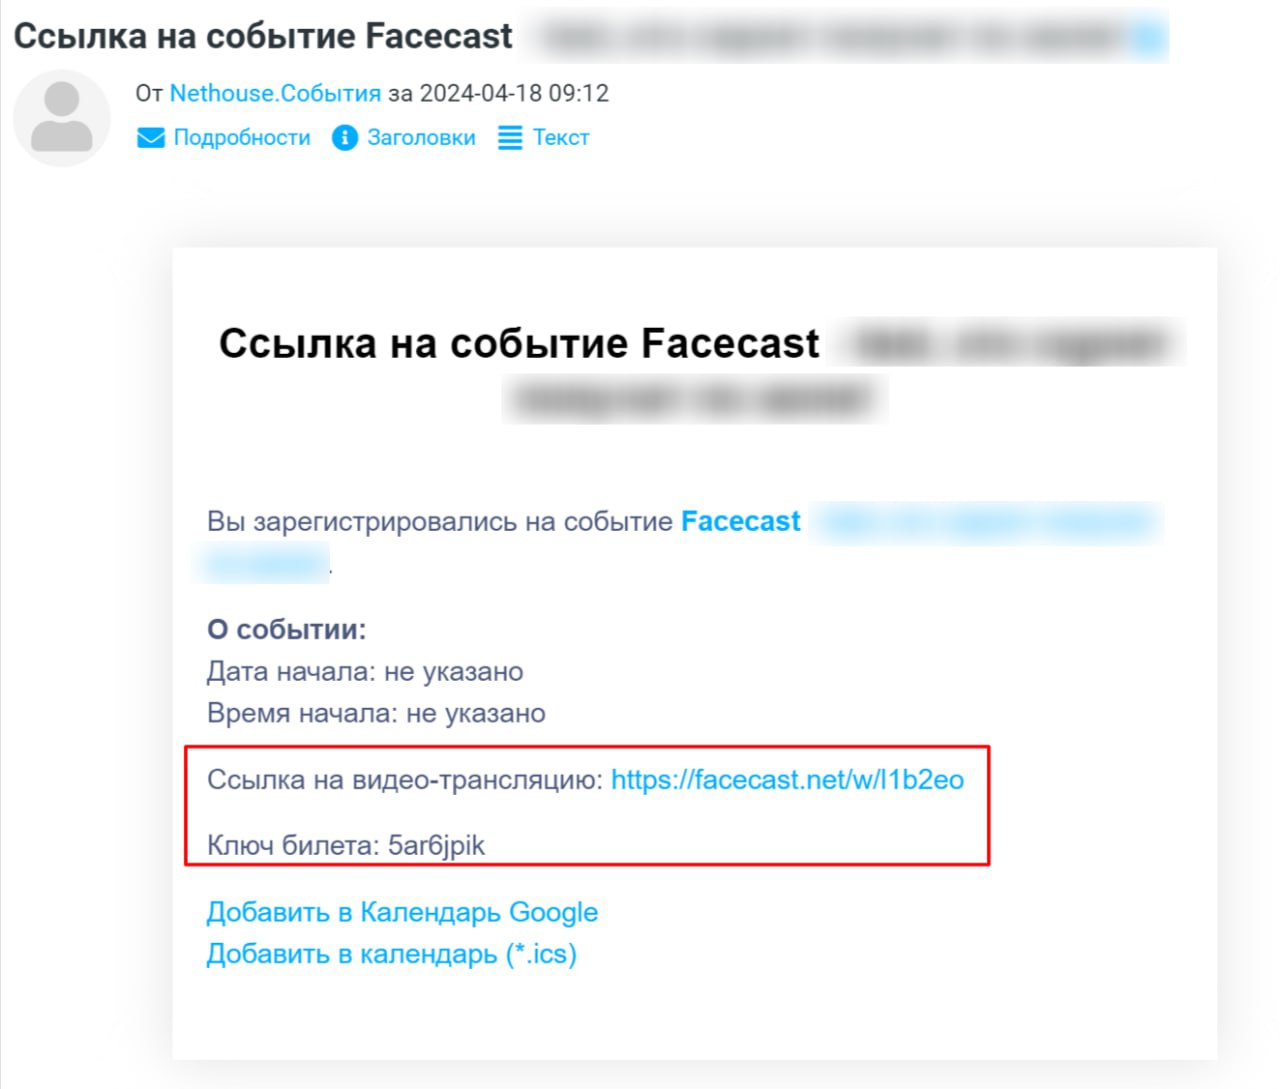 Как провести трансляцию в Facecast?